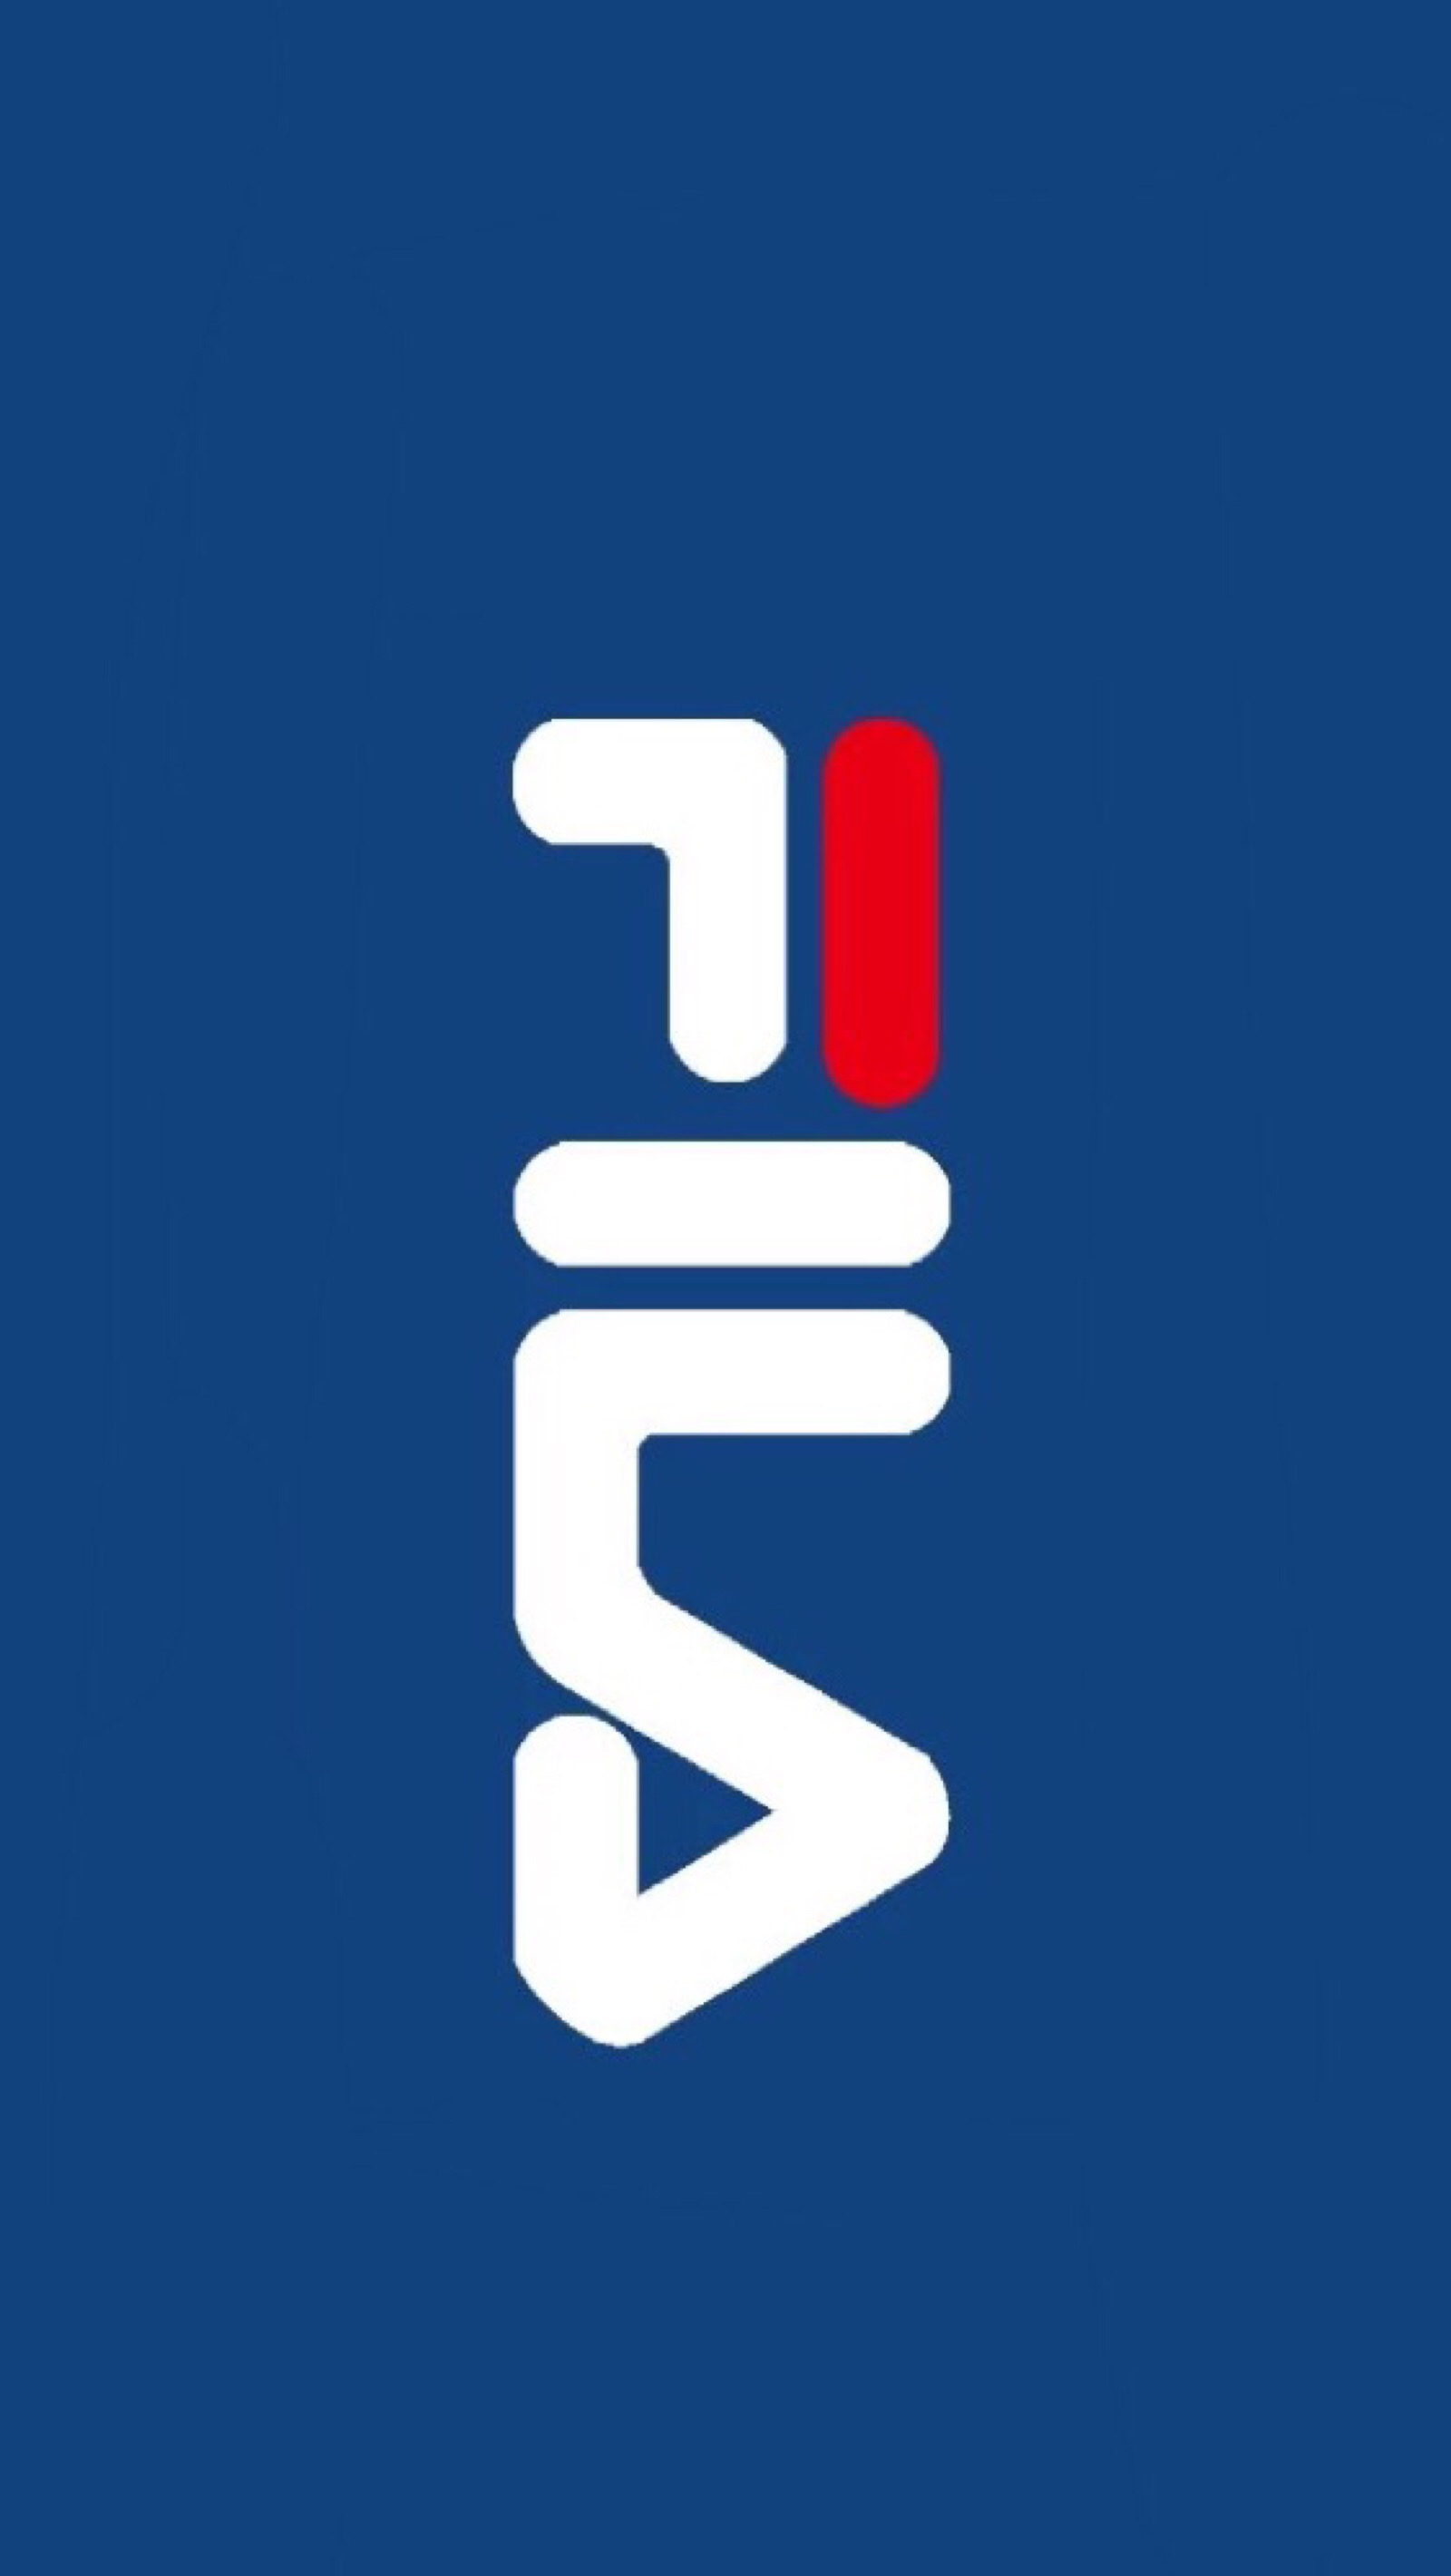 斐乐logo手机壁纸图片